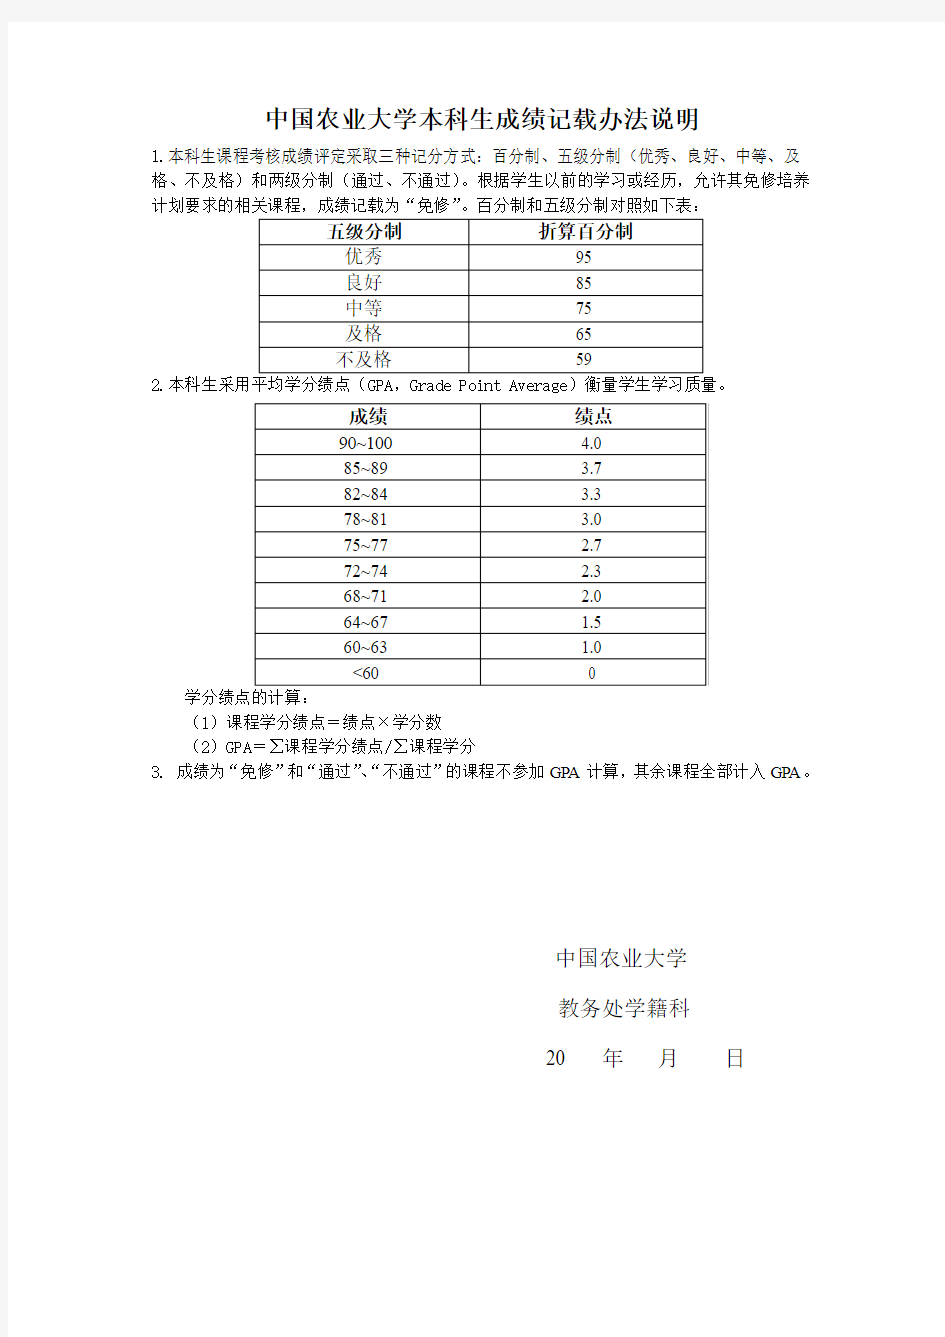 中国农业大学五级分制及绩点说明(中文)